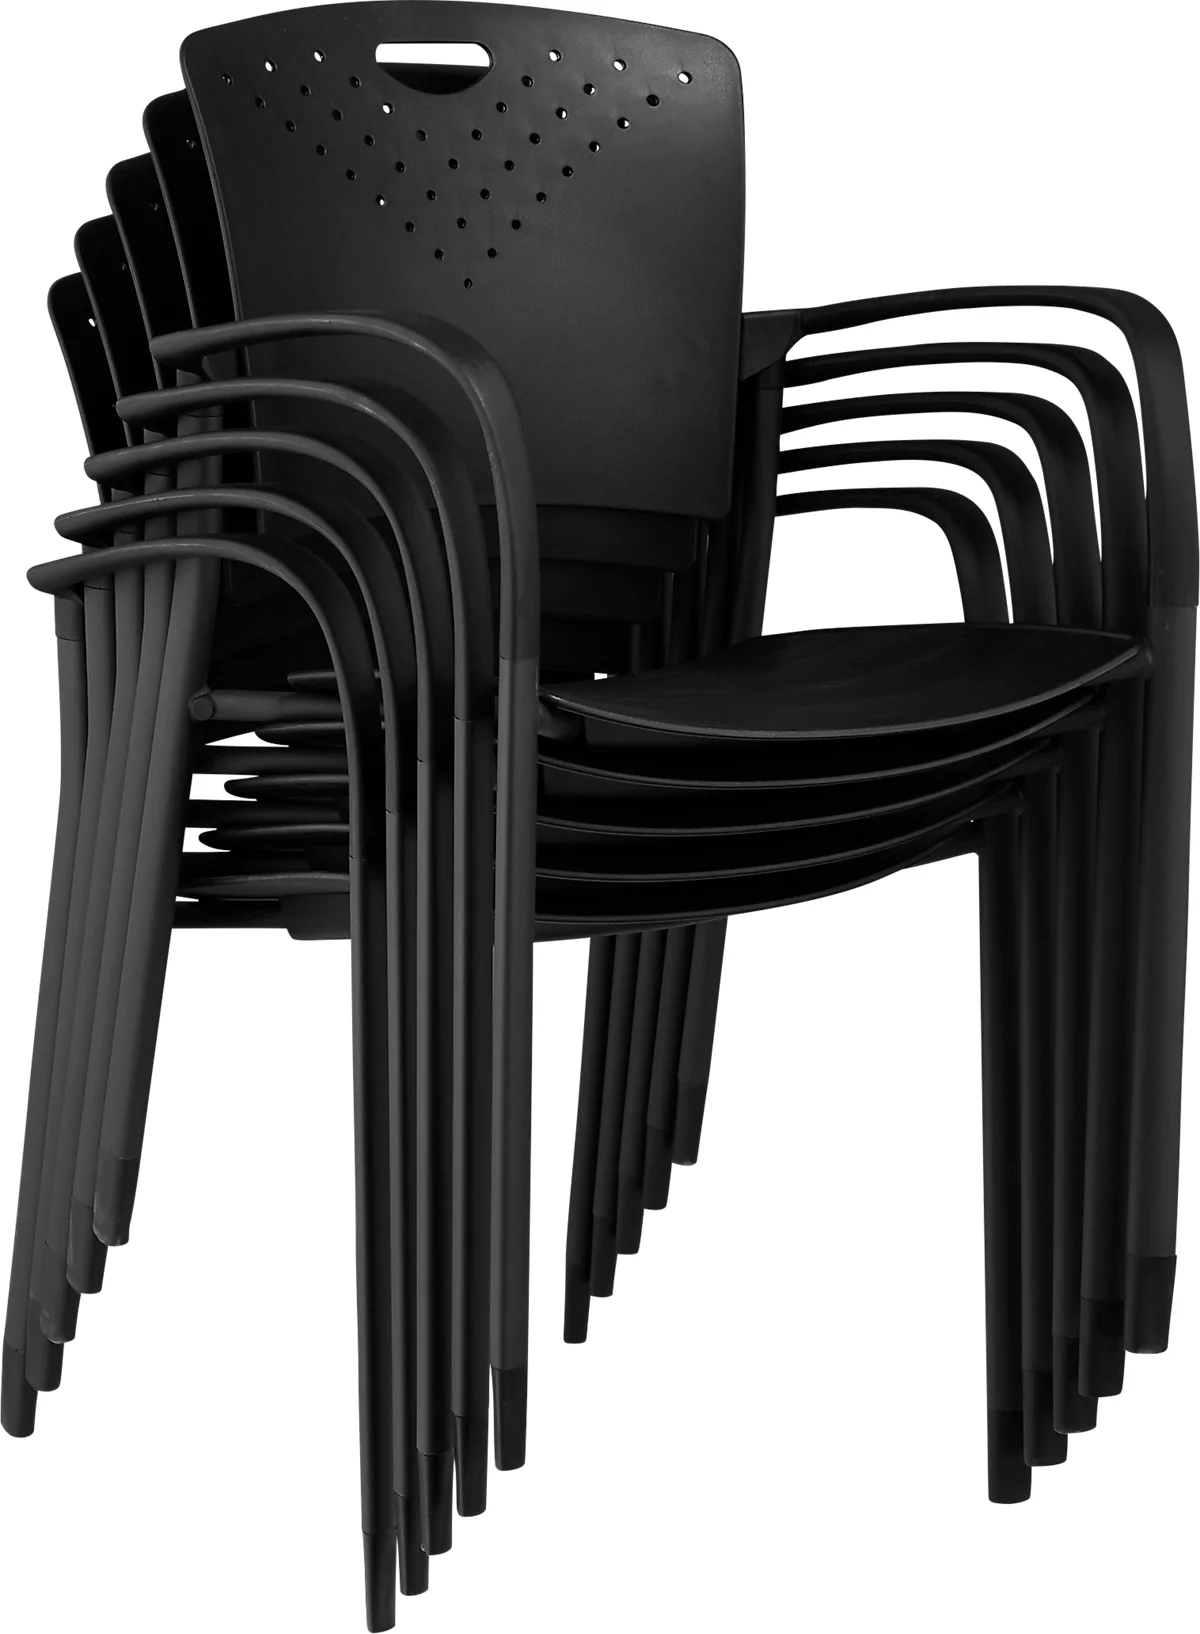 Stapelstuhl, ergonomisch, mit Armlehnen & Rückenlehnen-Griffmulde, stapelbar bis 9 Stück, B 430 x T 380 x H 430 mm, schwarz